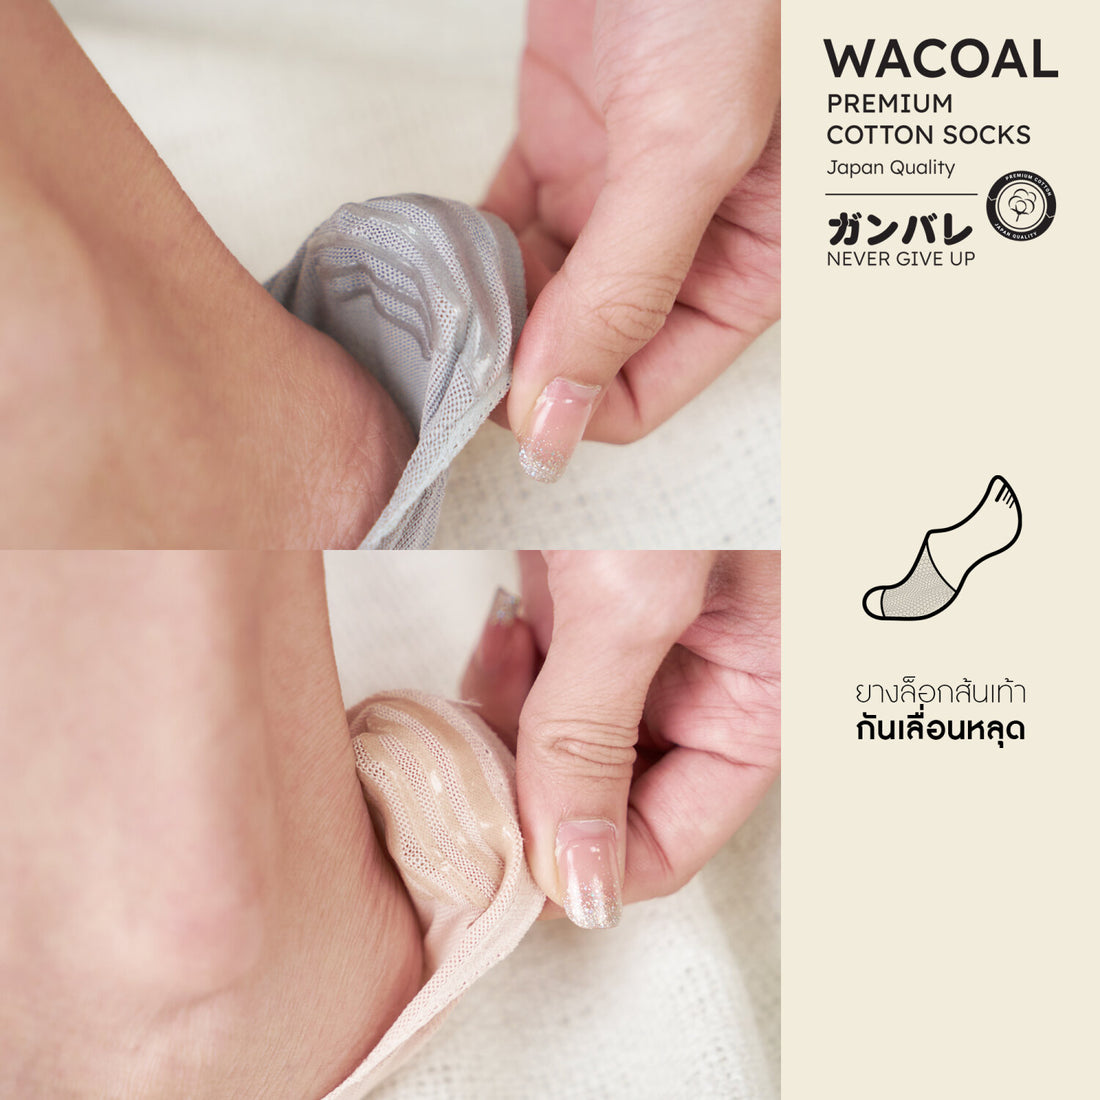 ถุงเท้าซ่อนข้อ ถุงเท้าข้อเว้า Premium Cotton Socks Selected by Wacoal รุ่น WW110400 สีเทา (LI)